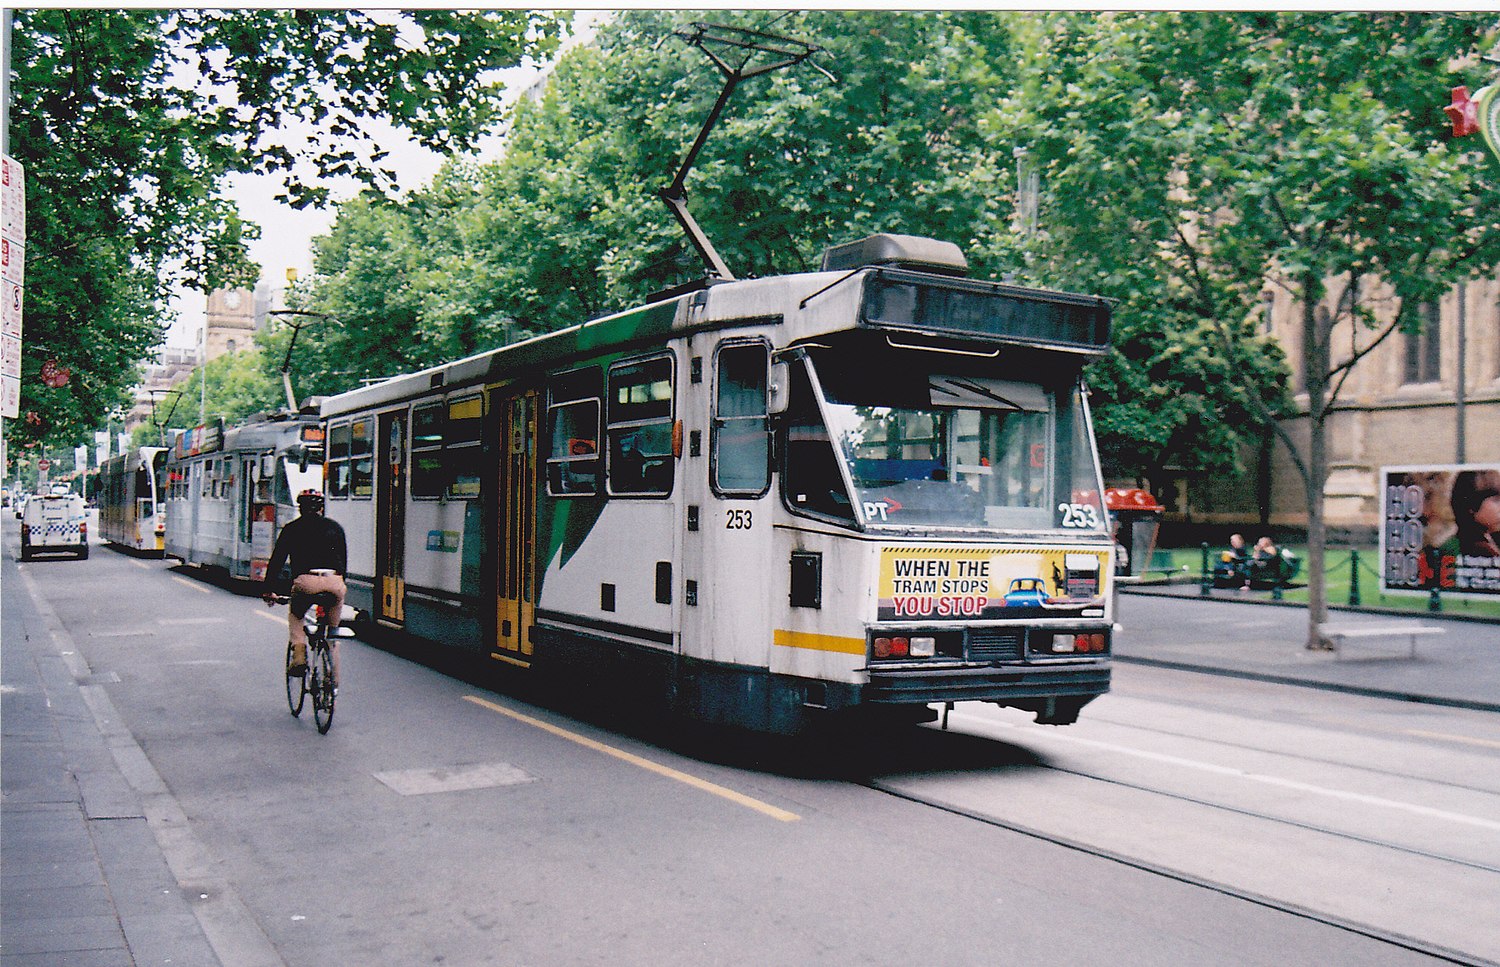 Melbourne tram route 12 - Wikipedia